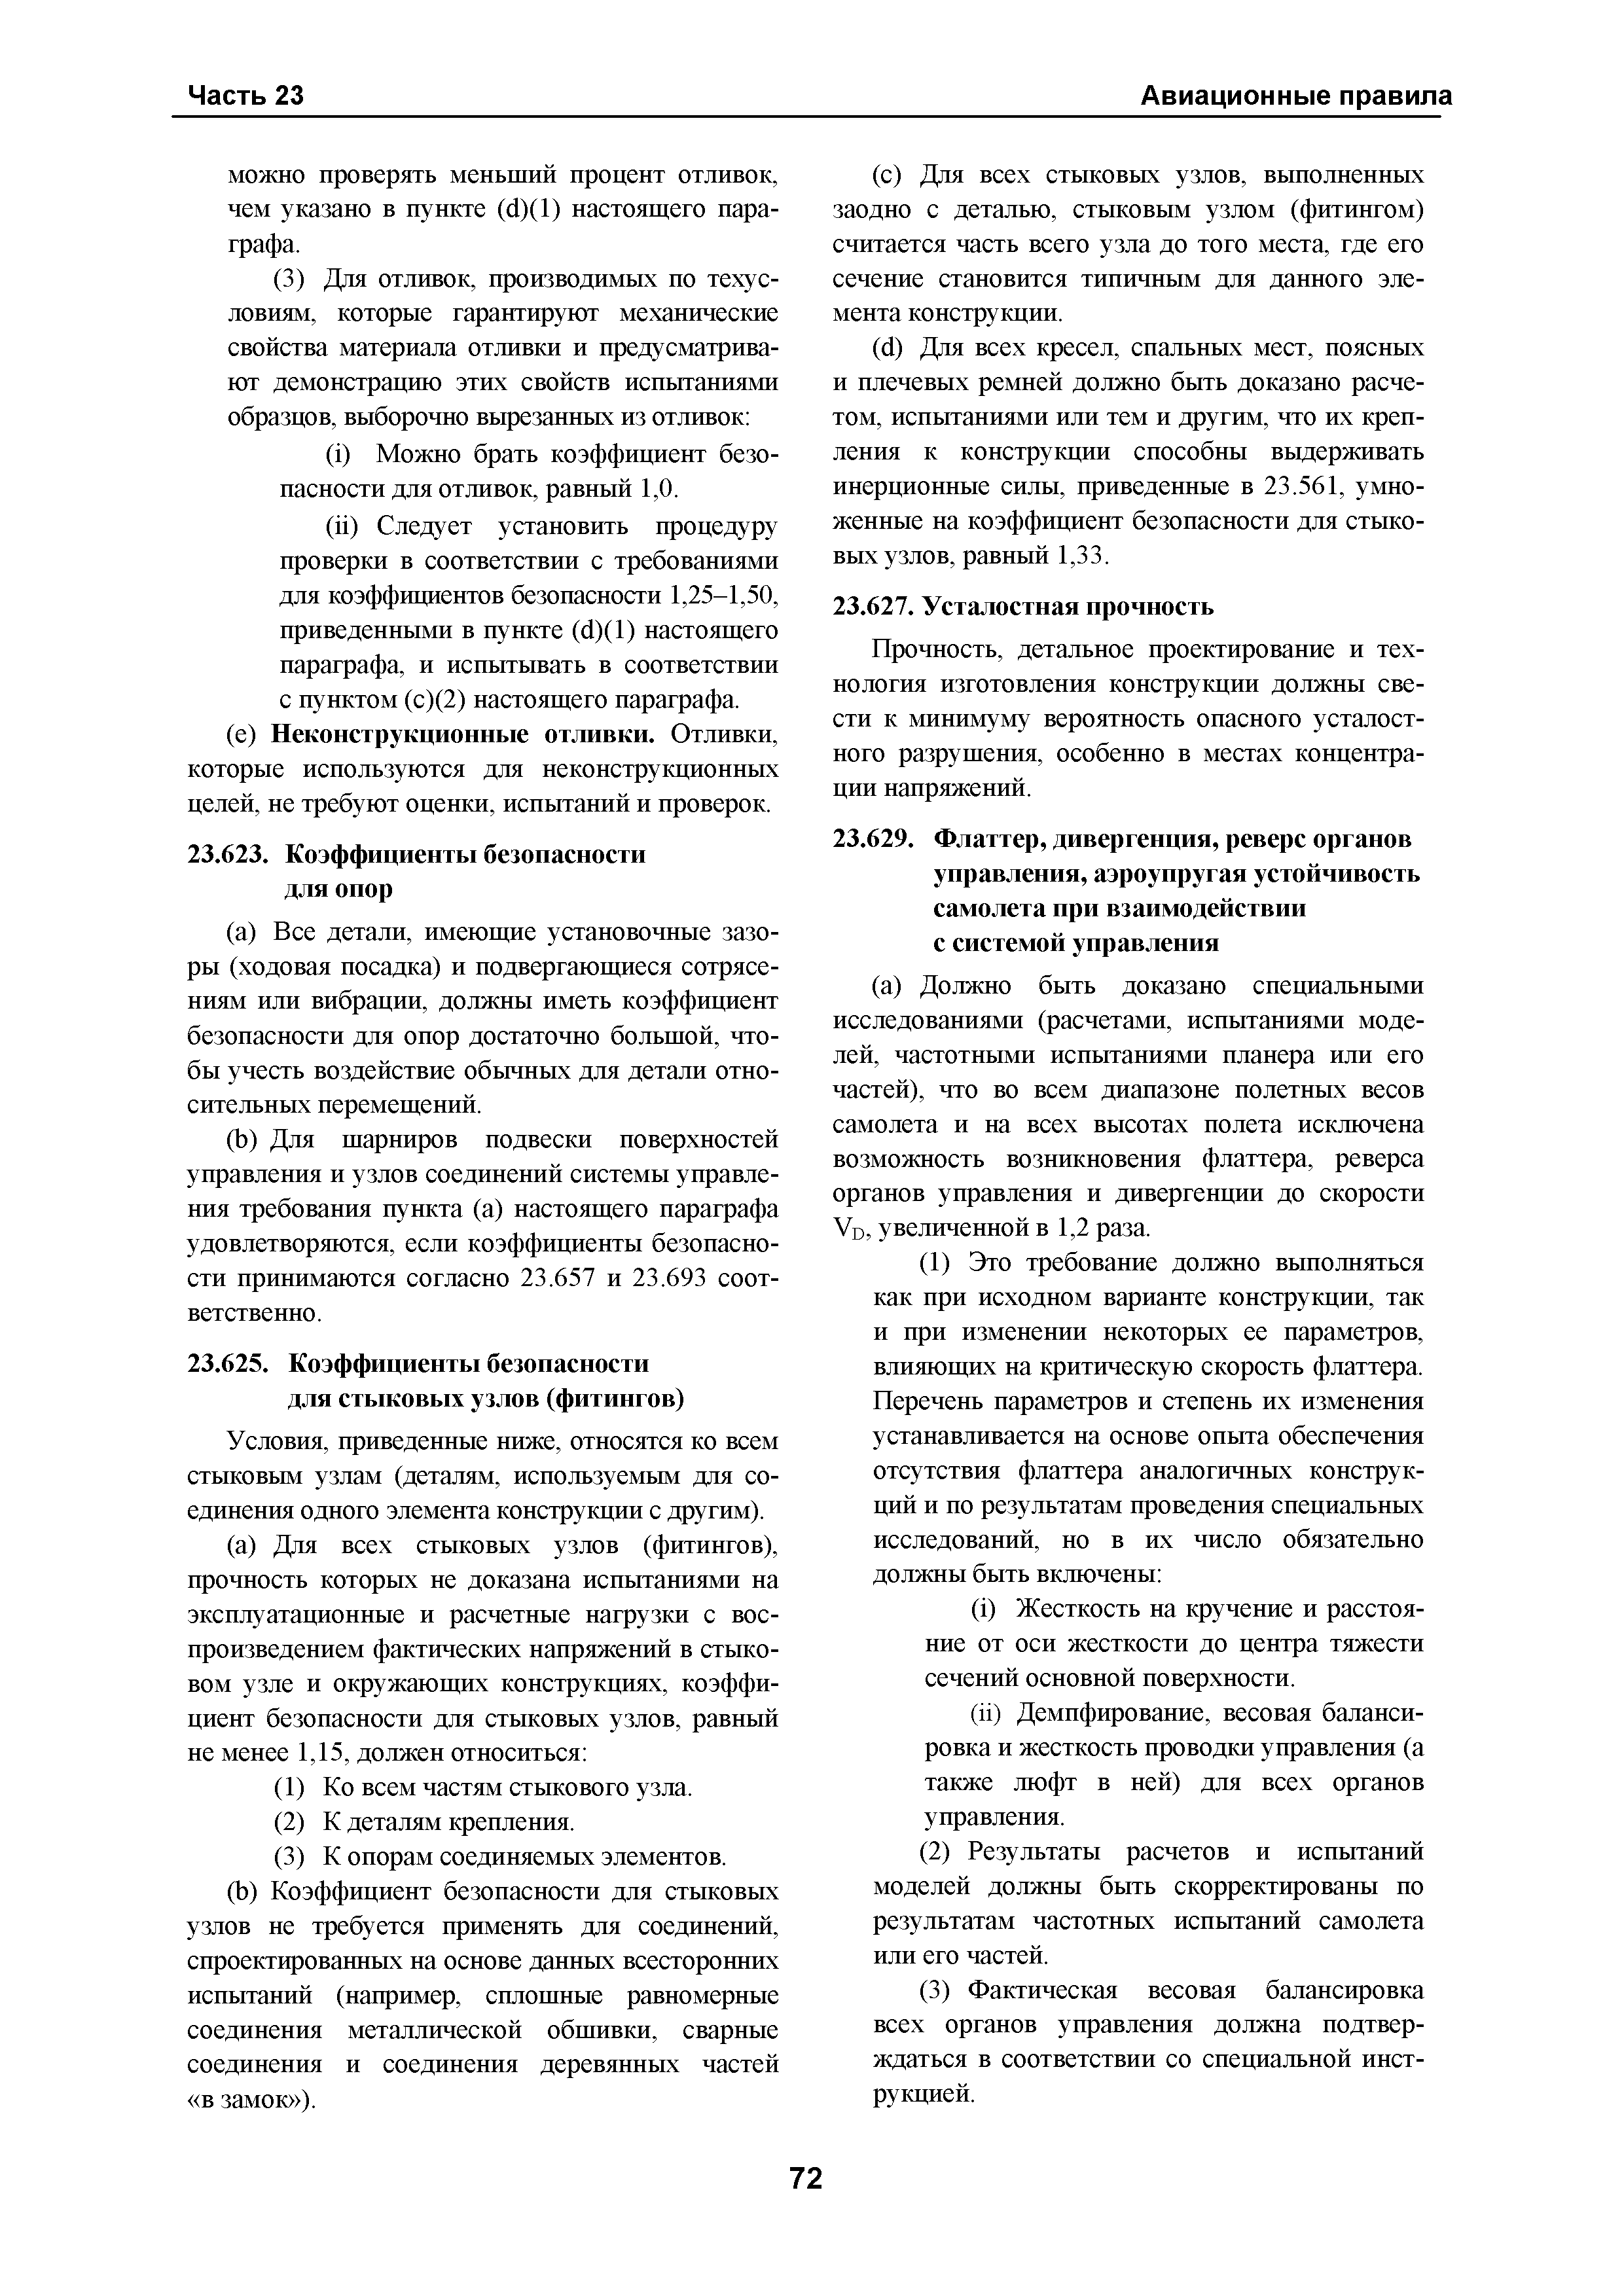 Авиационные правила Часть 23